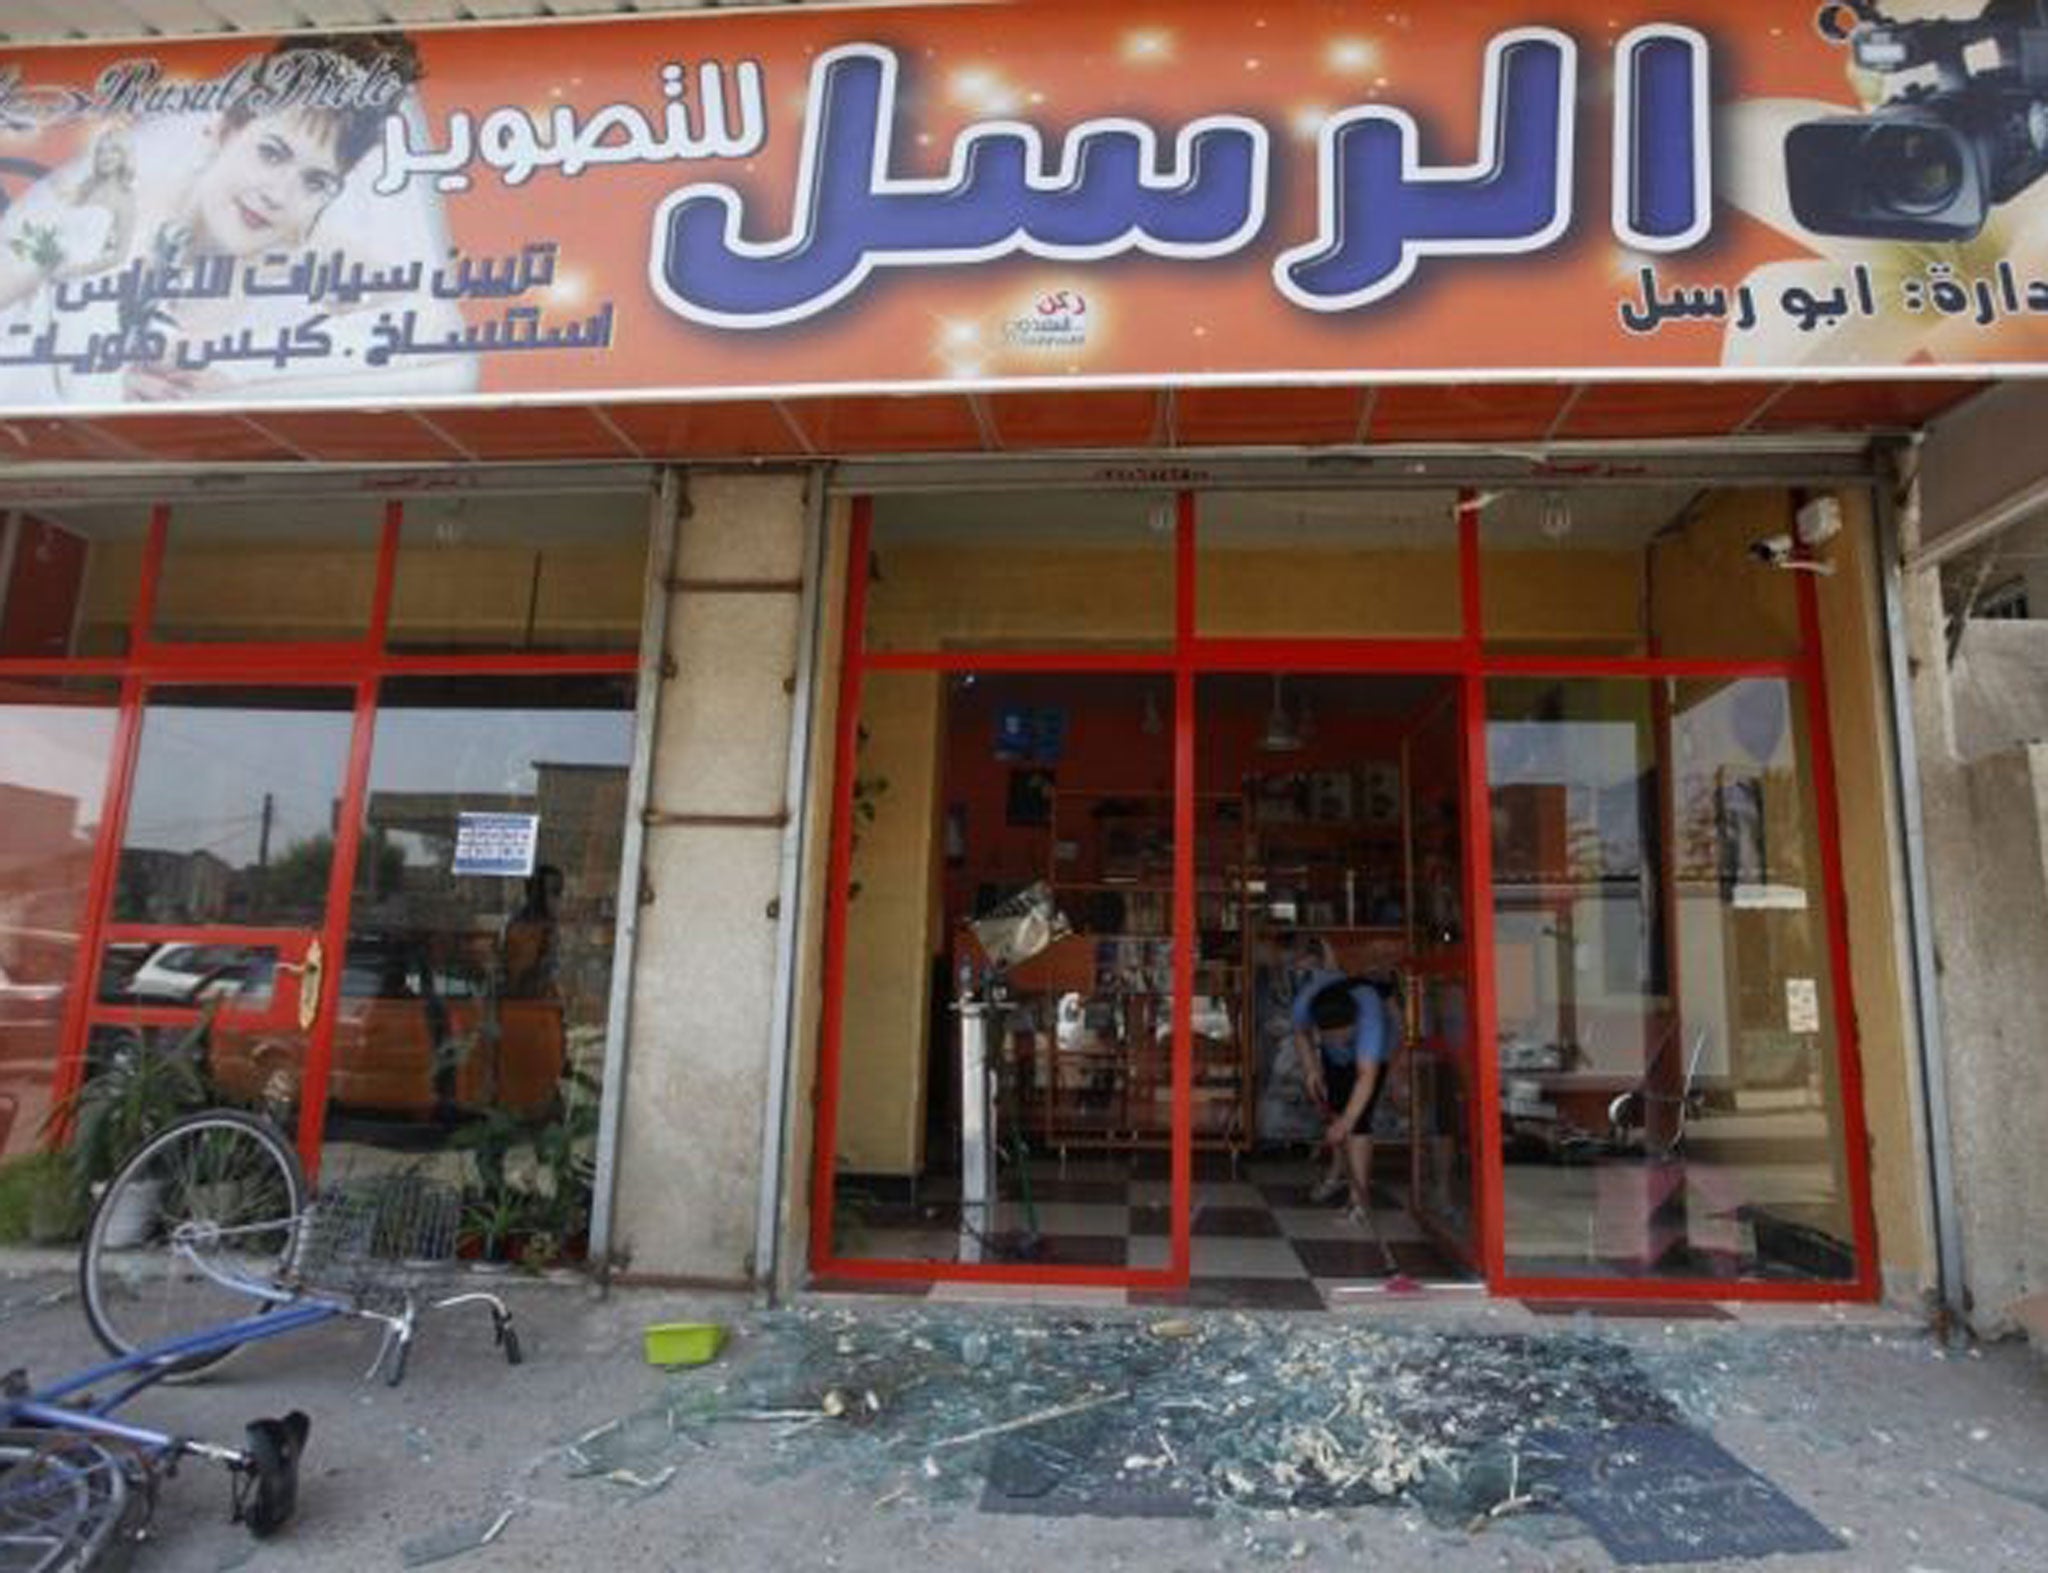 Recent cafe blasts have killed 17 around Iraq